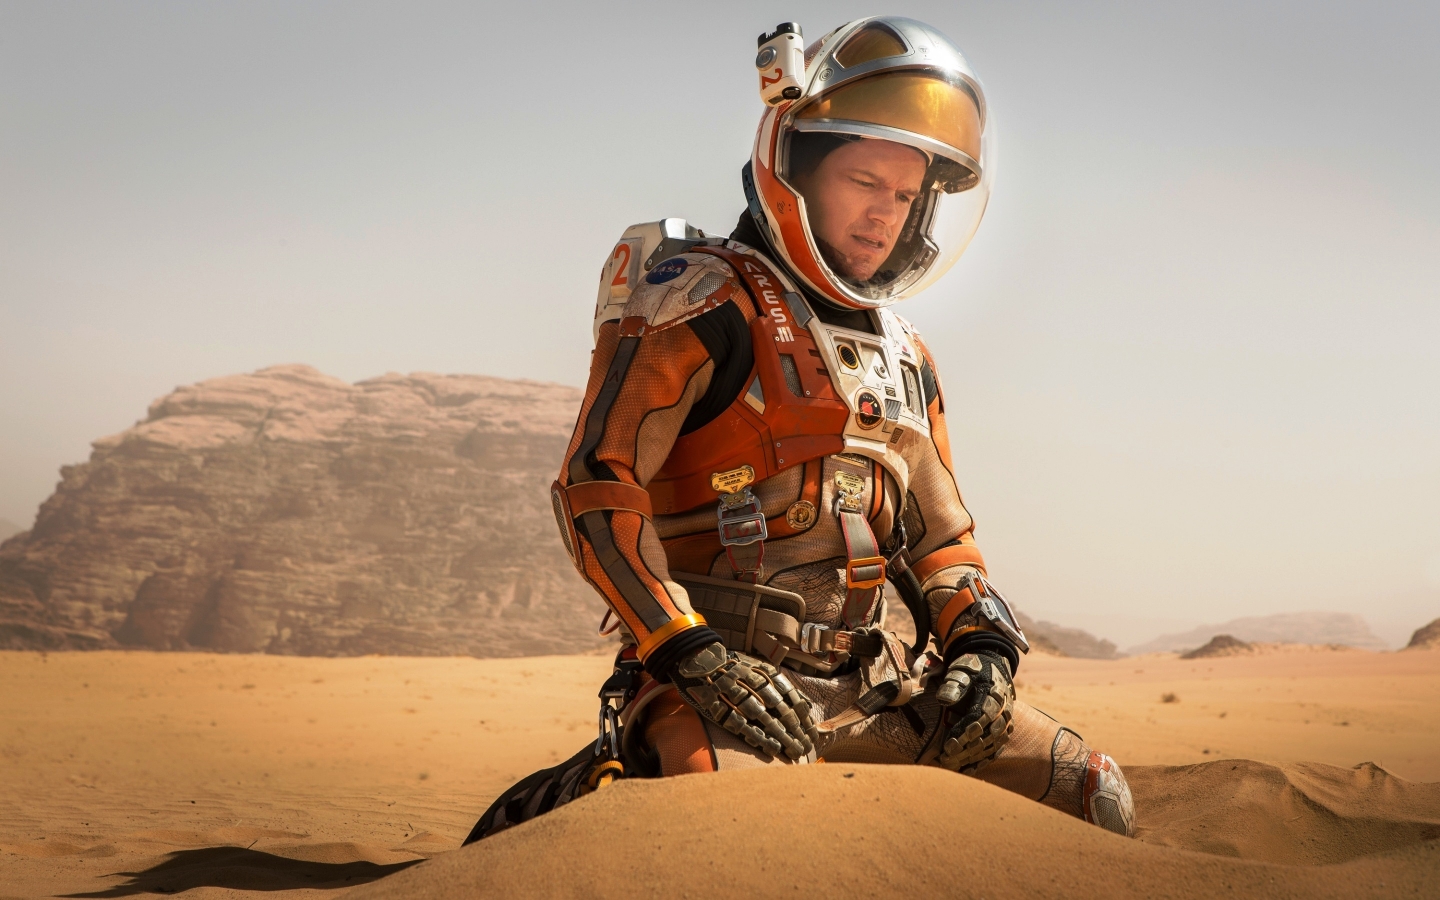 The Martian Matt Damon for 1440 x 900 widescreen resolution